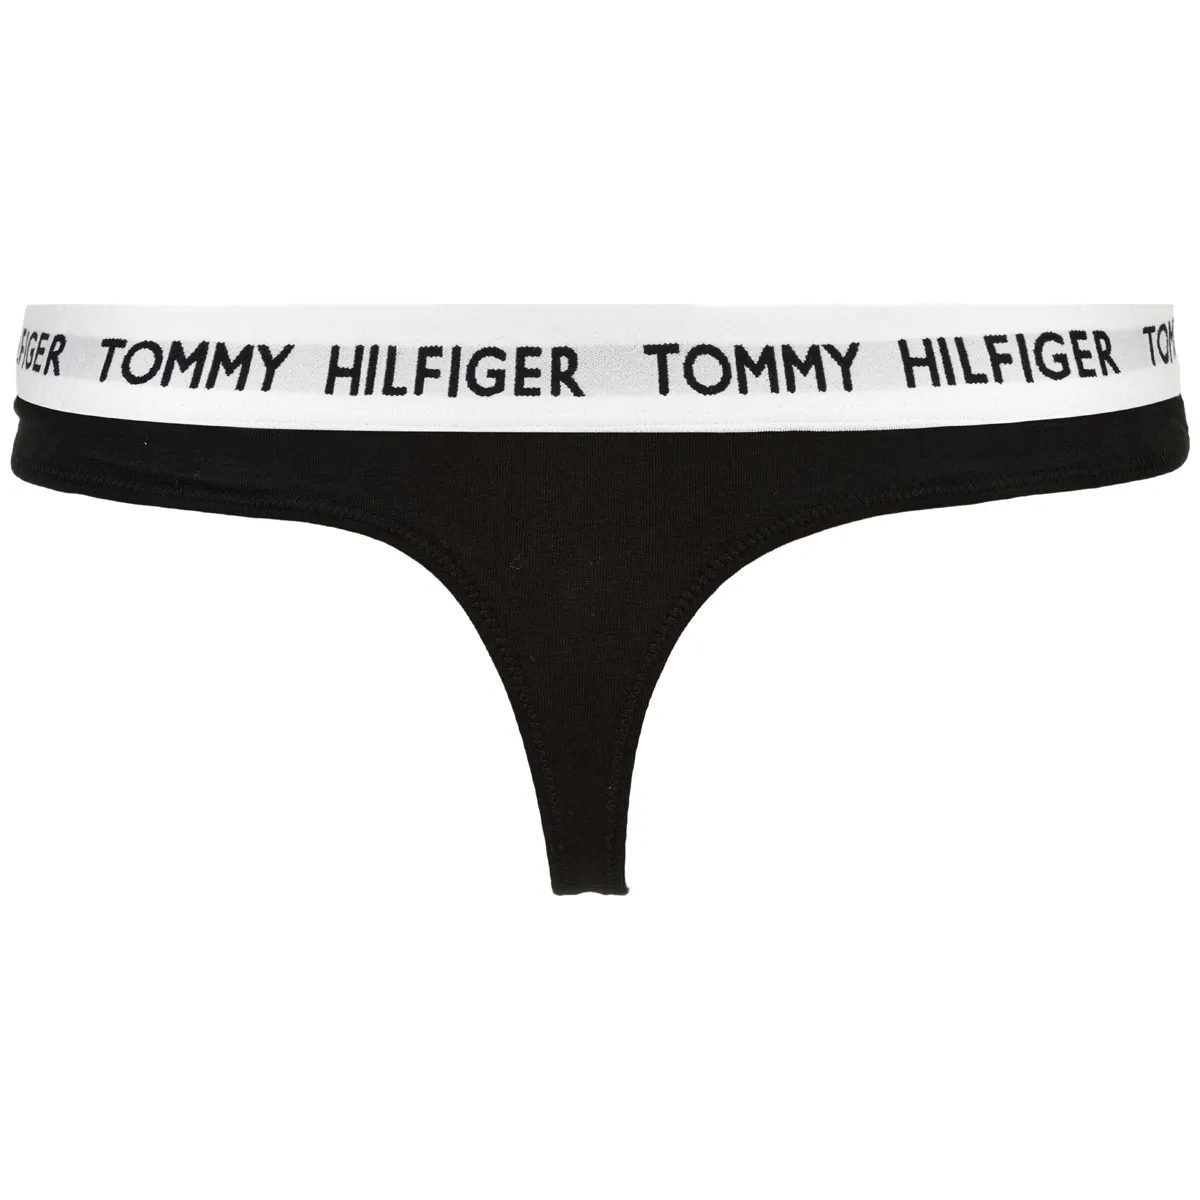 vejr hinanden tackle Tommy Hilfiger • TOMMY HILFIGER LINGERI STRING W02198 BDS • Pris kr. 143.1